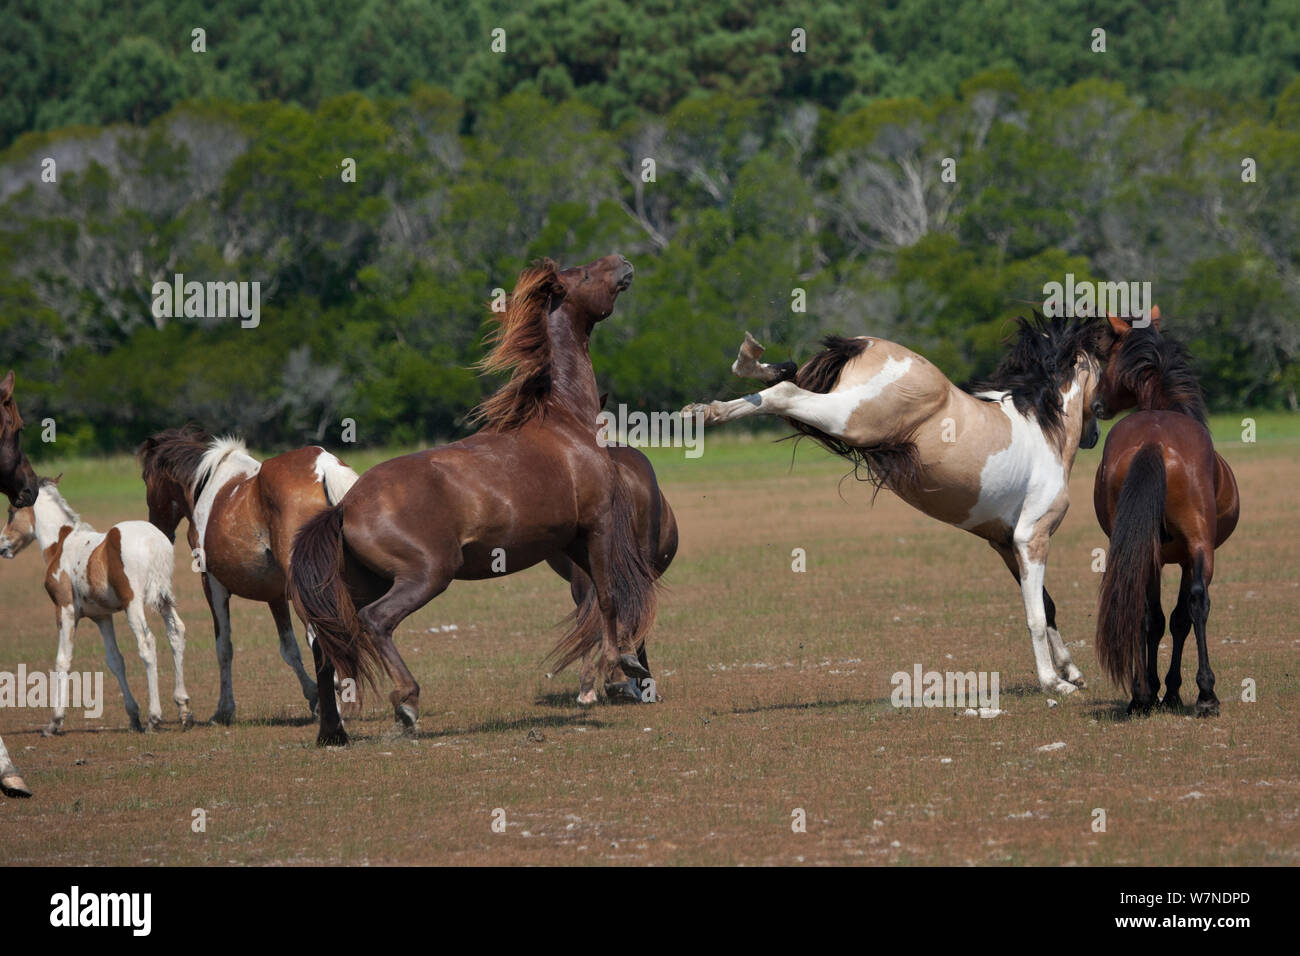 Chincoteague sauvage (Equus caballus) Deux étalons reproducteurs combats, Chincoteague National Wildlife Refuge, Chincoteague Island, Virginie, USA, juin séquence 2 sur 3. Banque D'Images